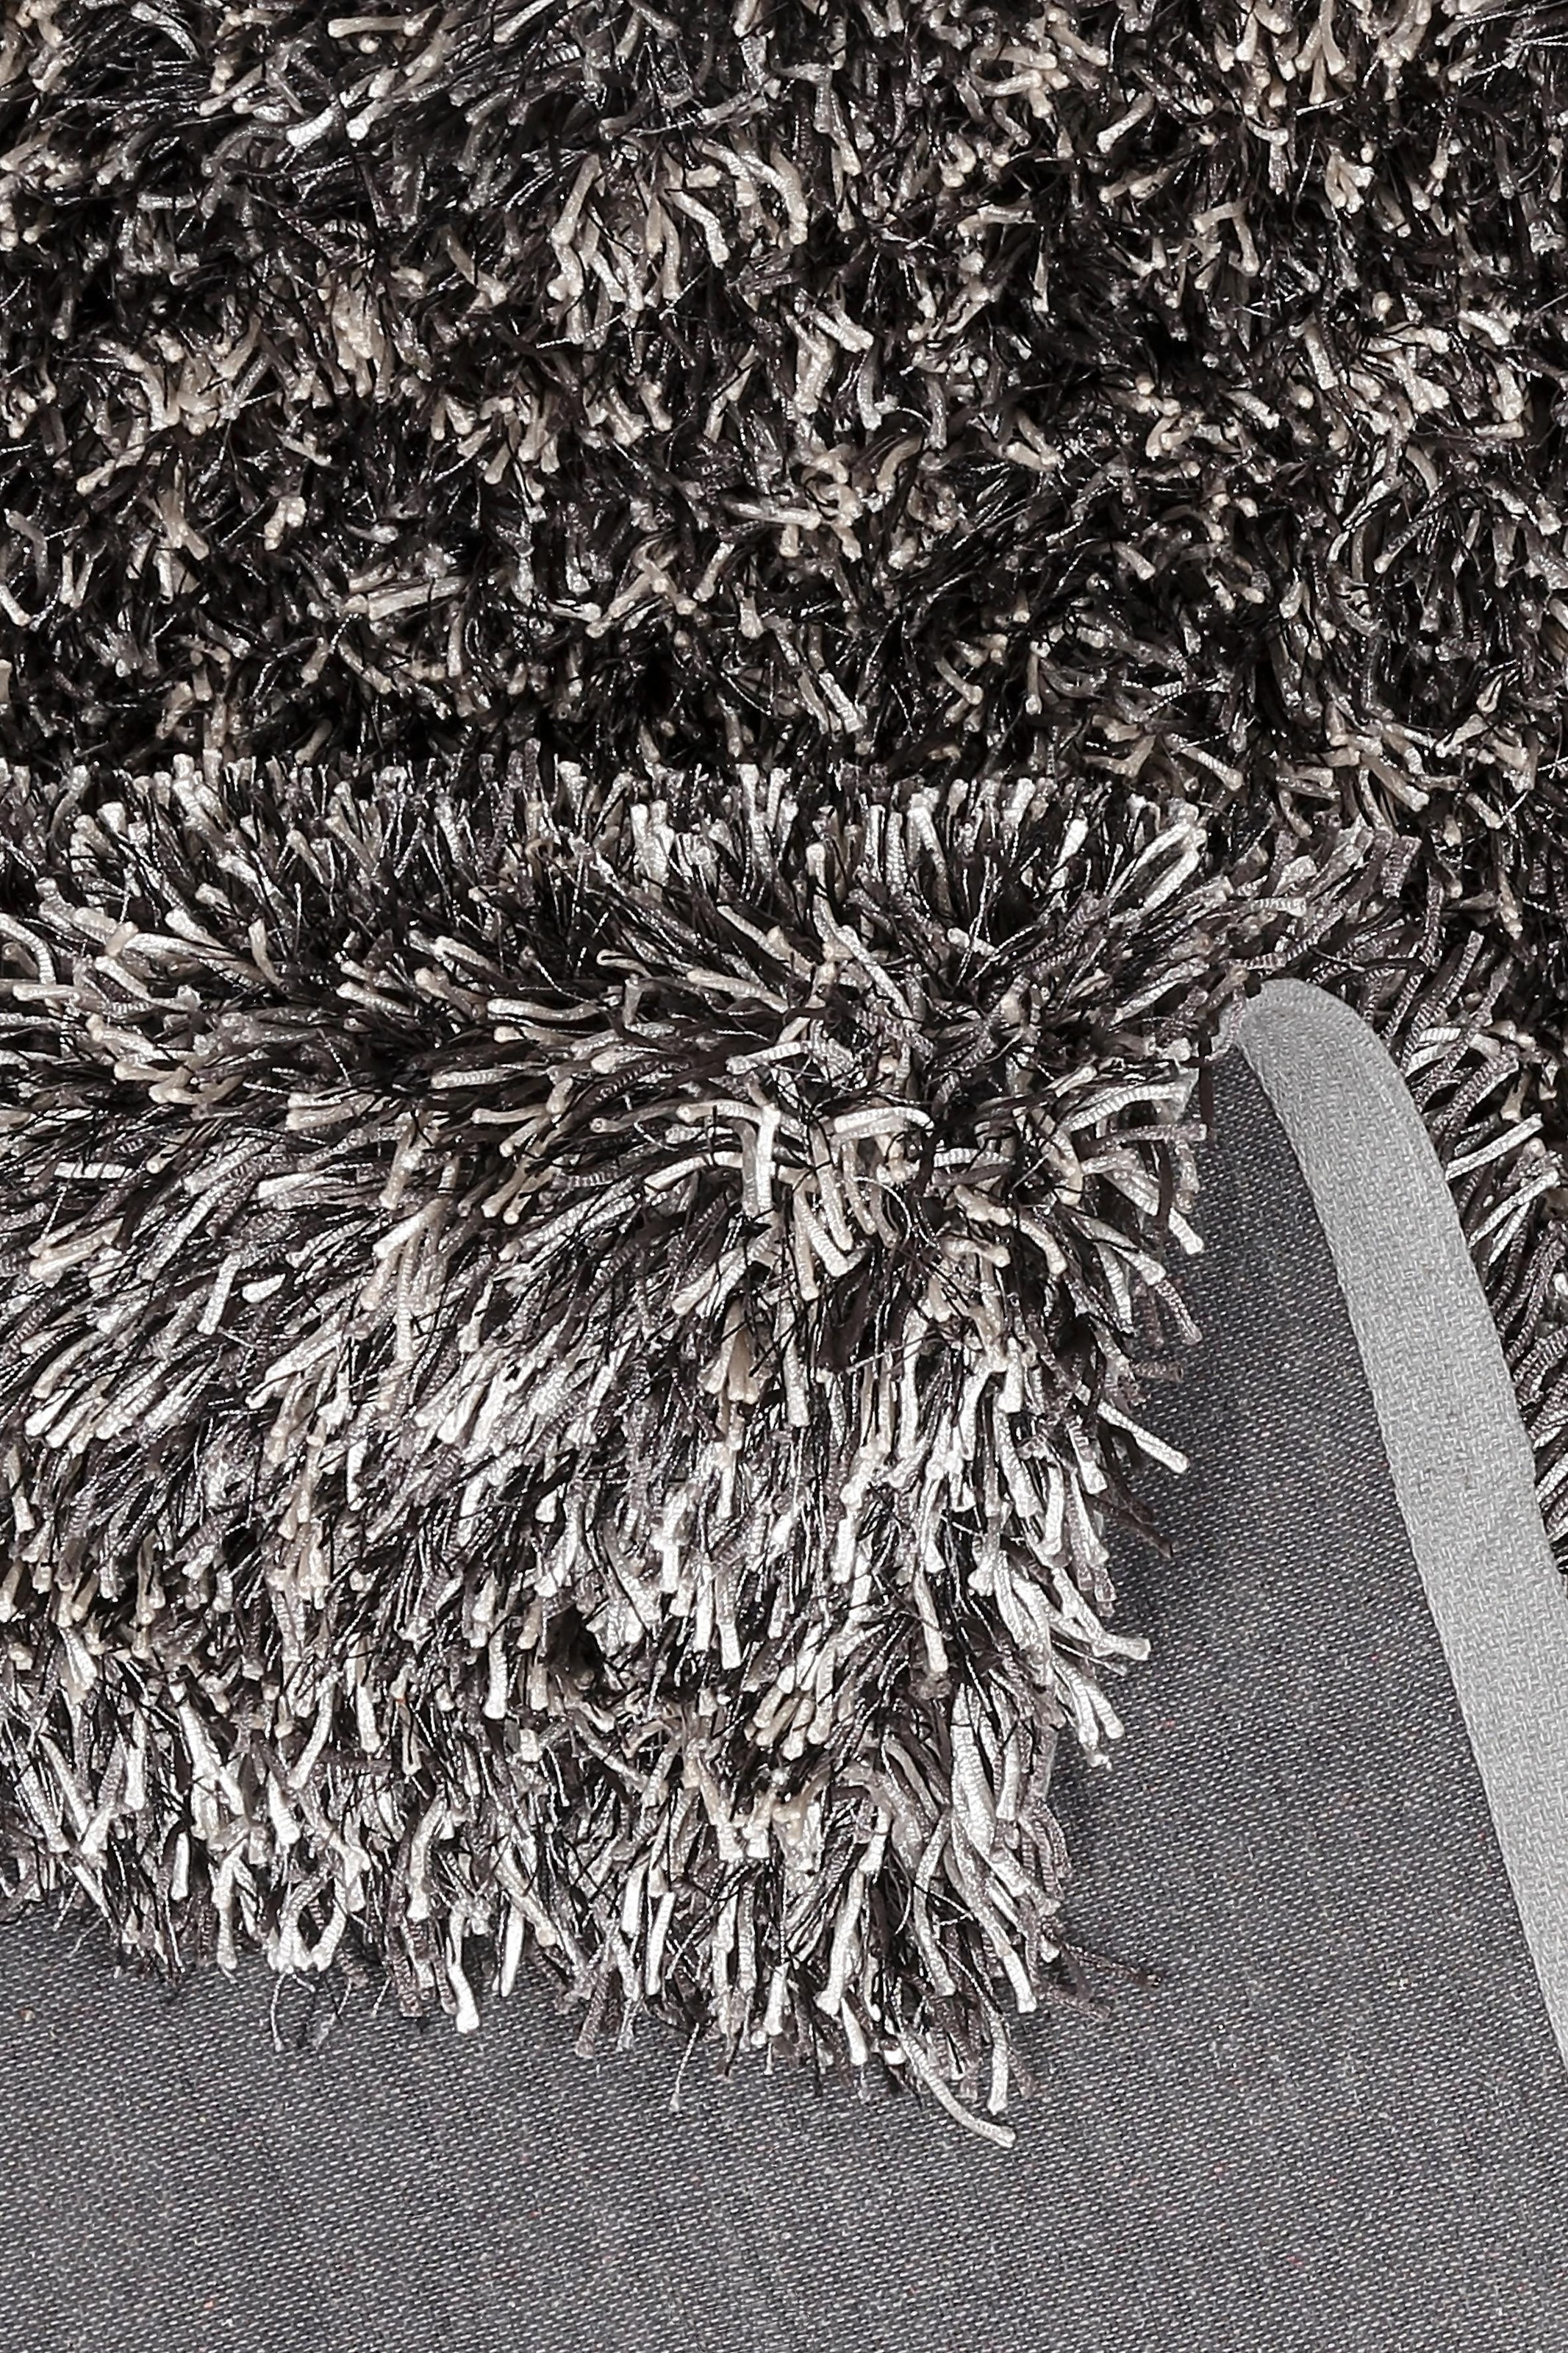 THEKO Hochflor-Teppich »Girly«, rechteckig, besonders weich durch Microfaser, ideal im Wohnzimmer & Schlafzimmer